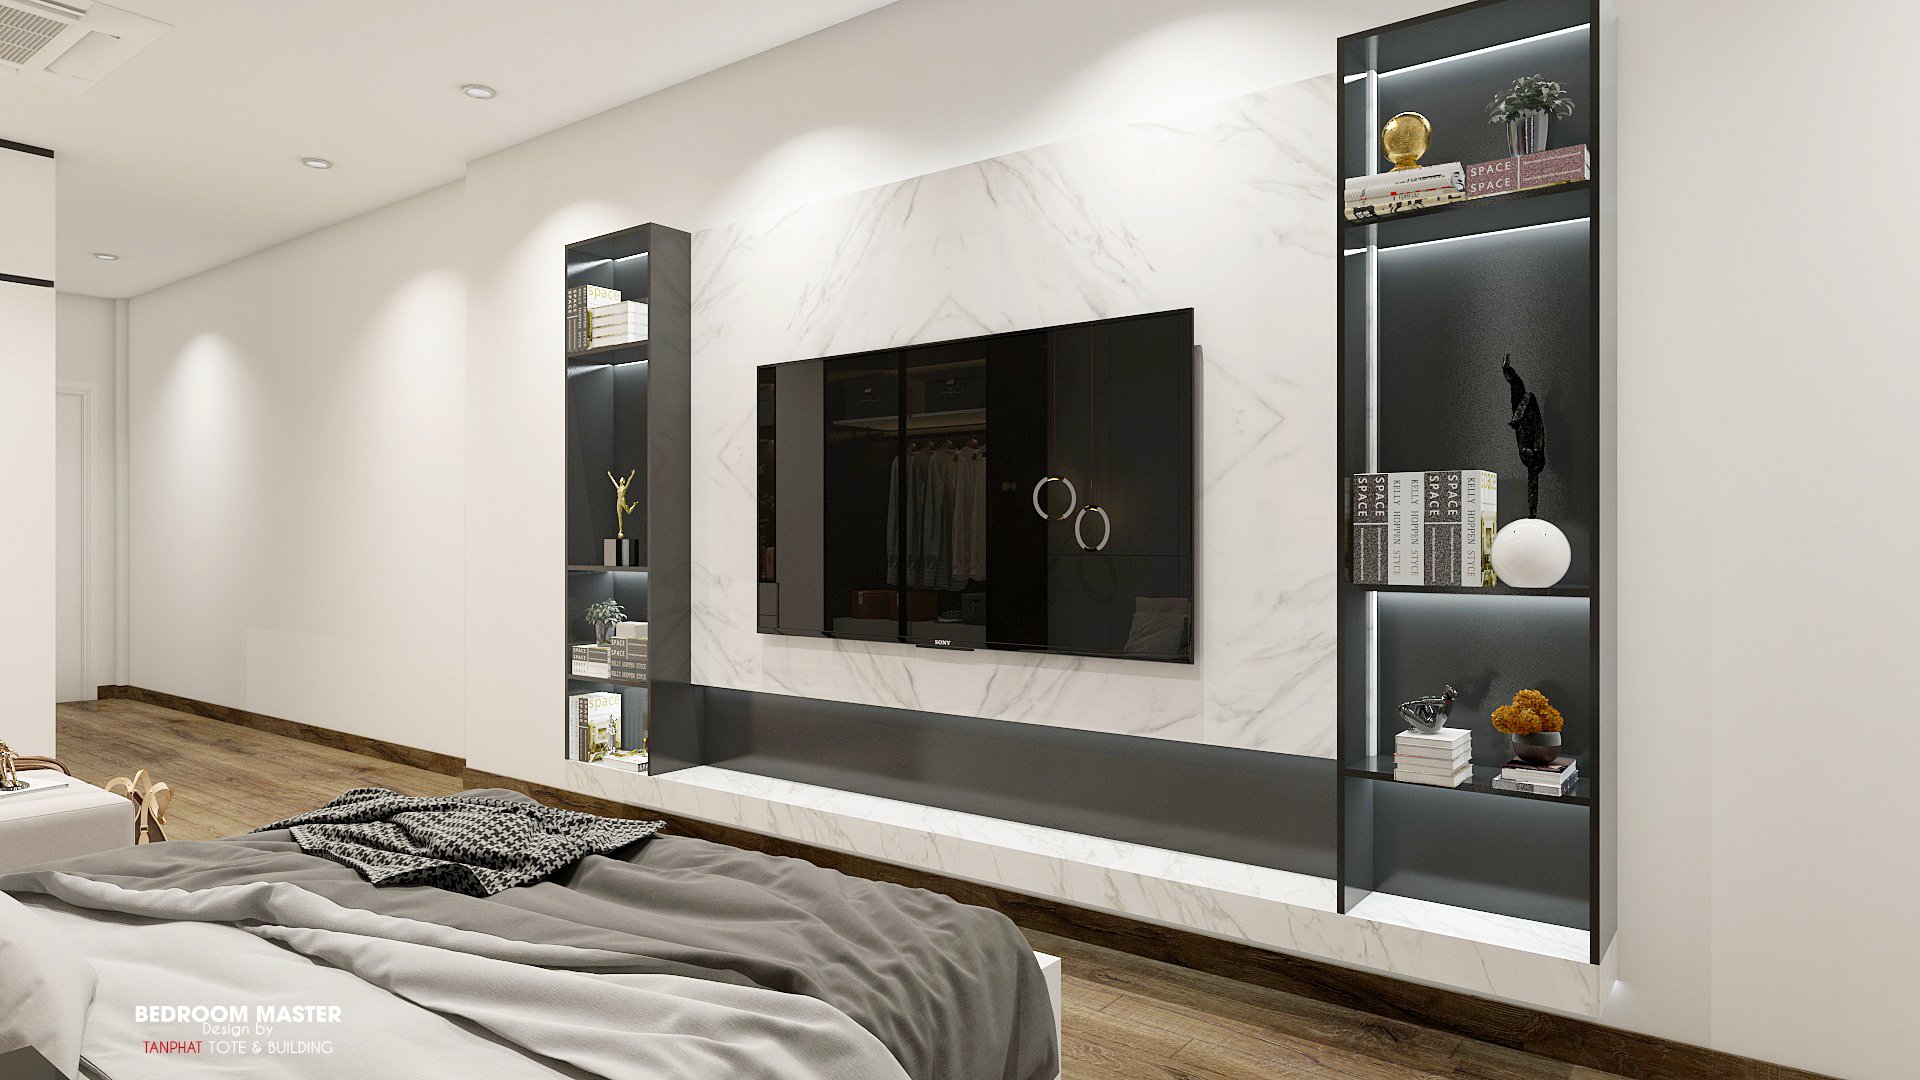 Thiết kế nội thất mang đến một không gian hoàn hảo